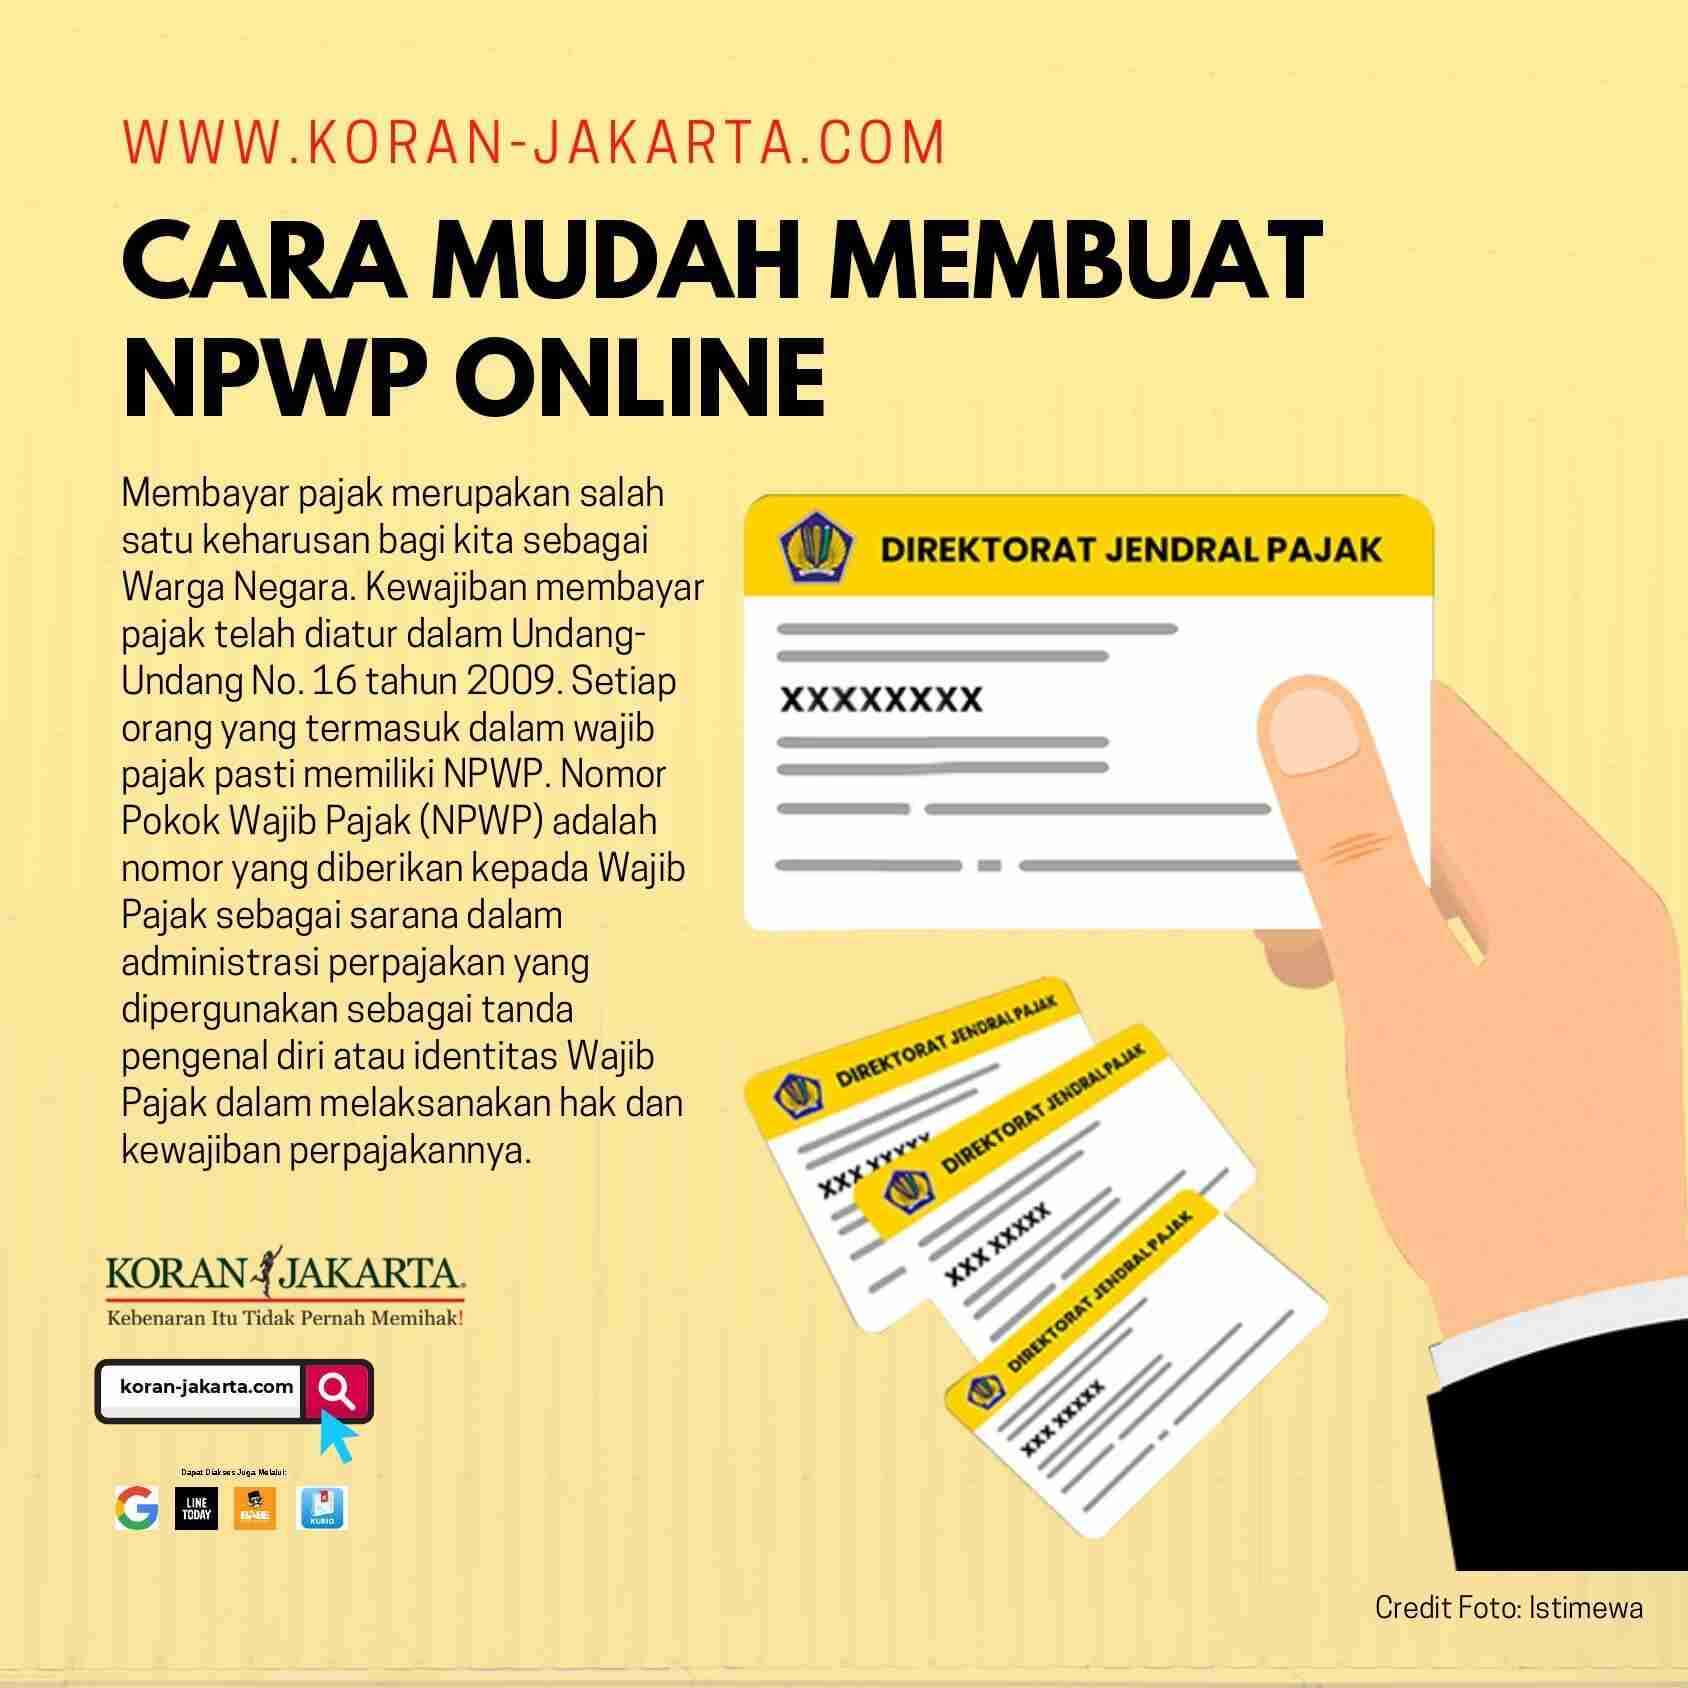 Cara Mudah Membuat NPWP Online